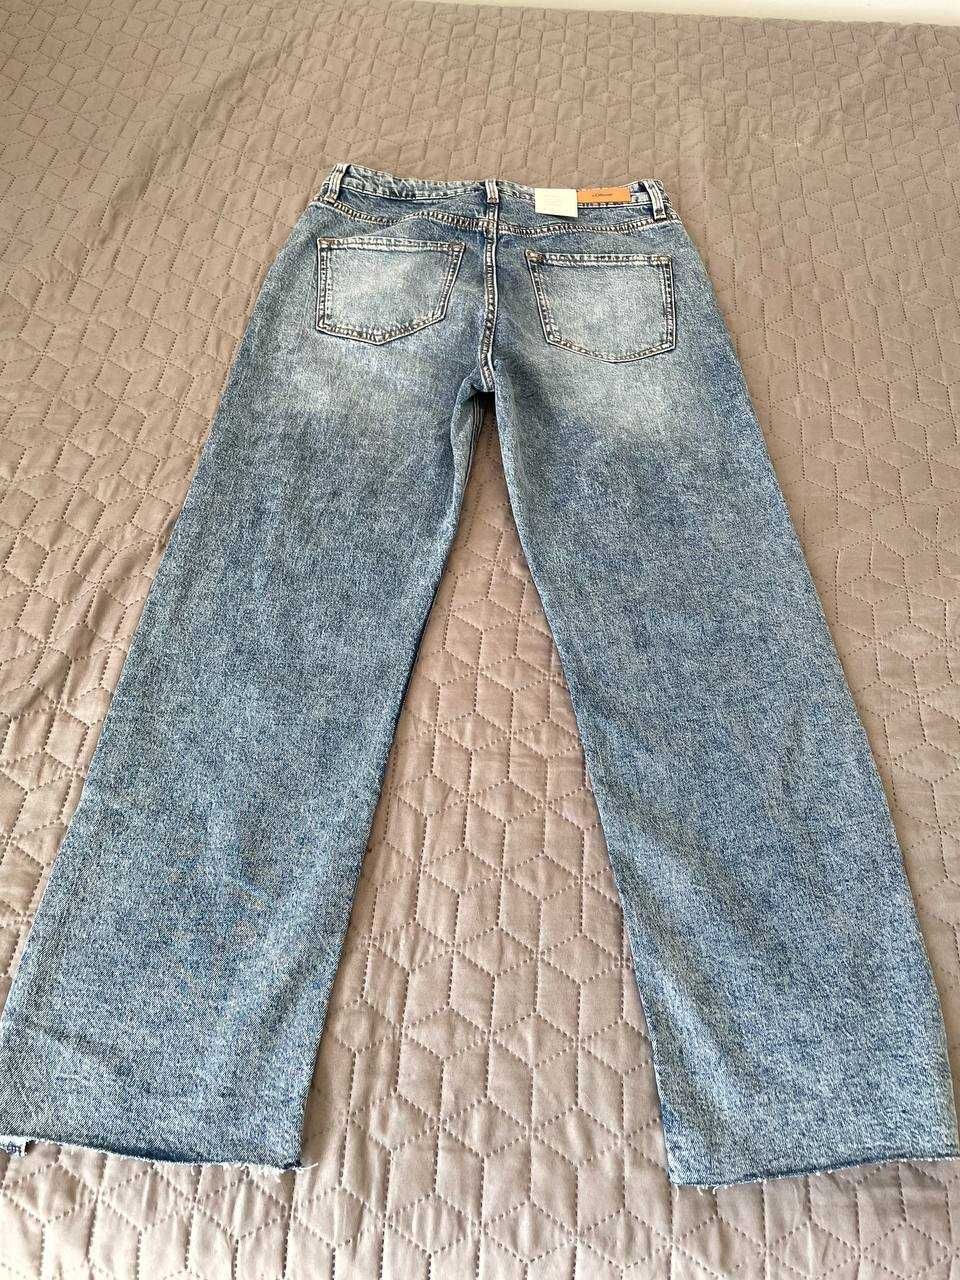 S.oliver світло-сині джинси, нові прямі, літні, 36 розмір